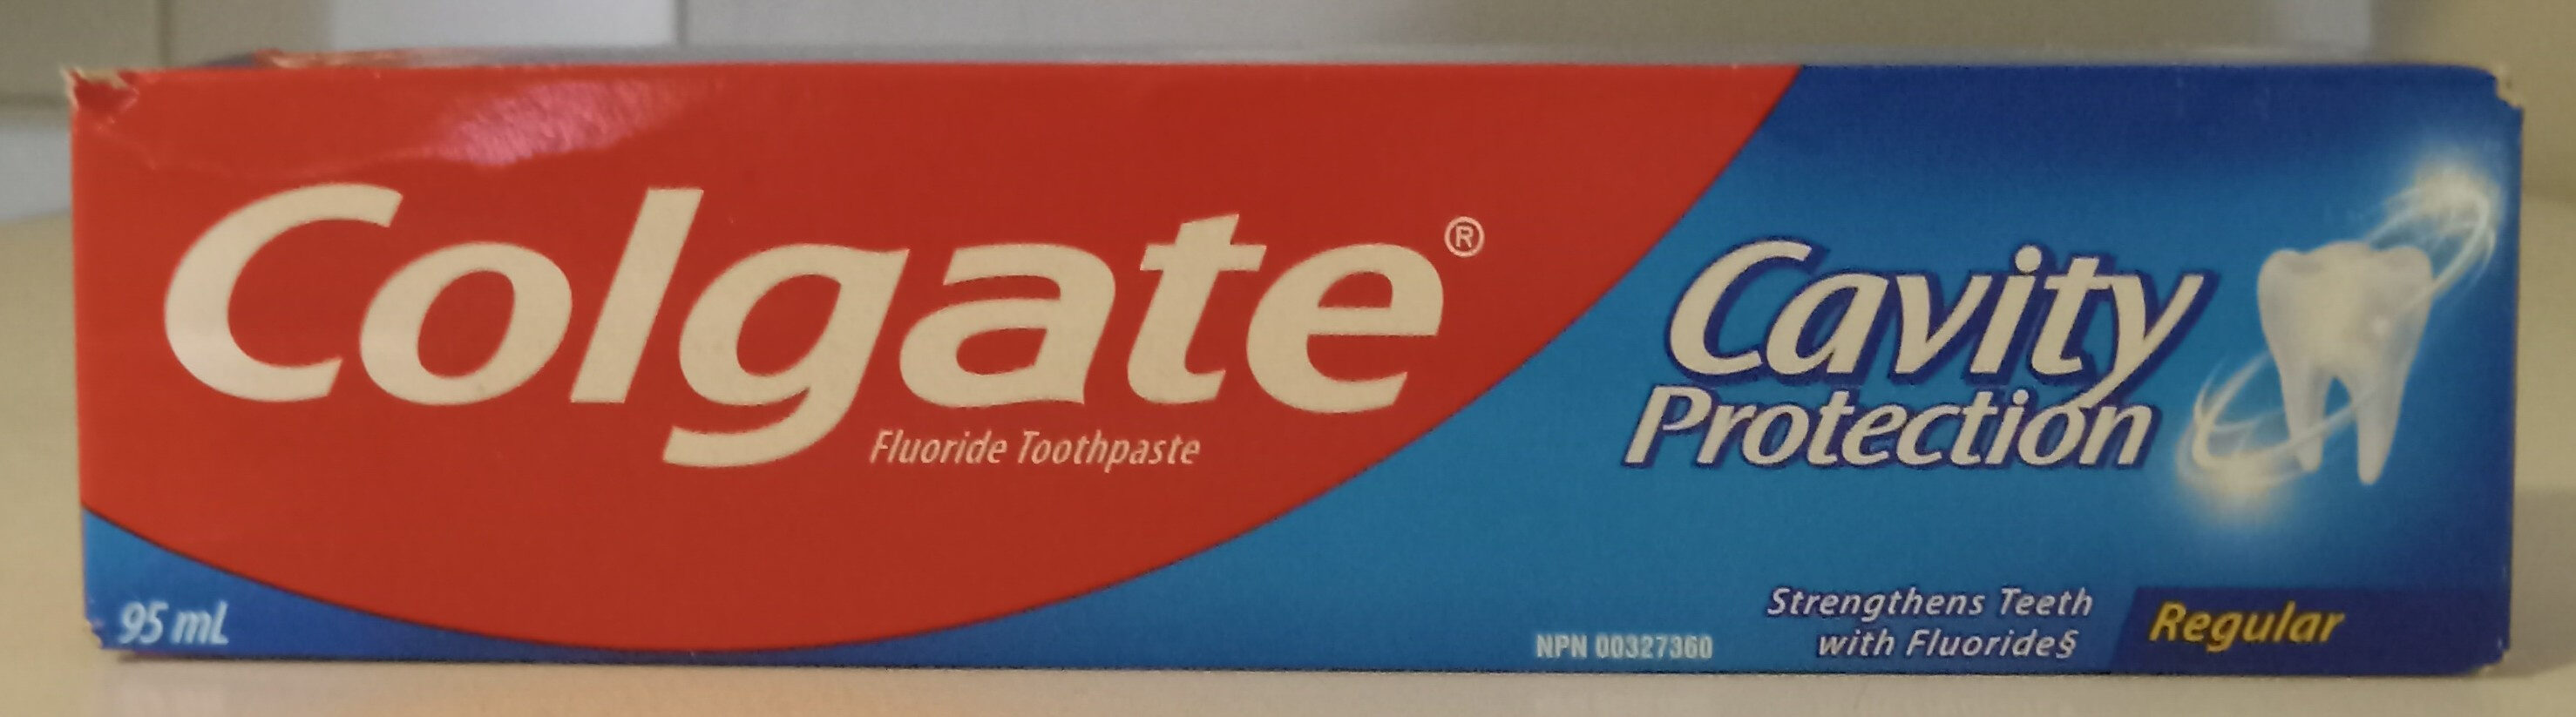 Regular Cavity Protection Flouride Toothpaste - Produto - en